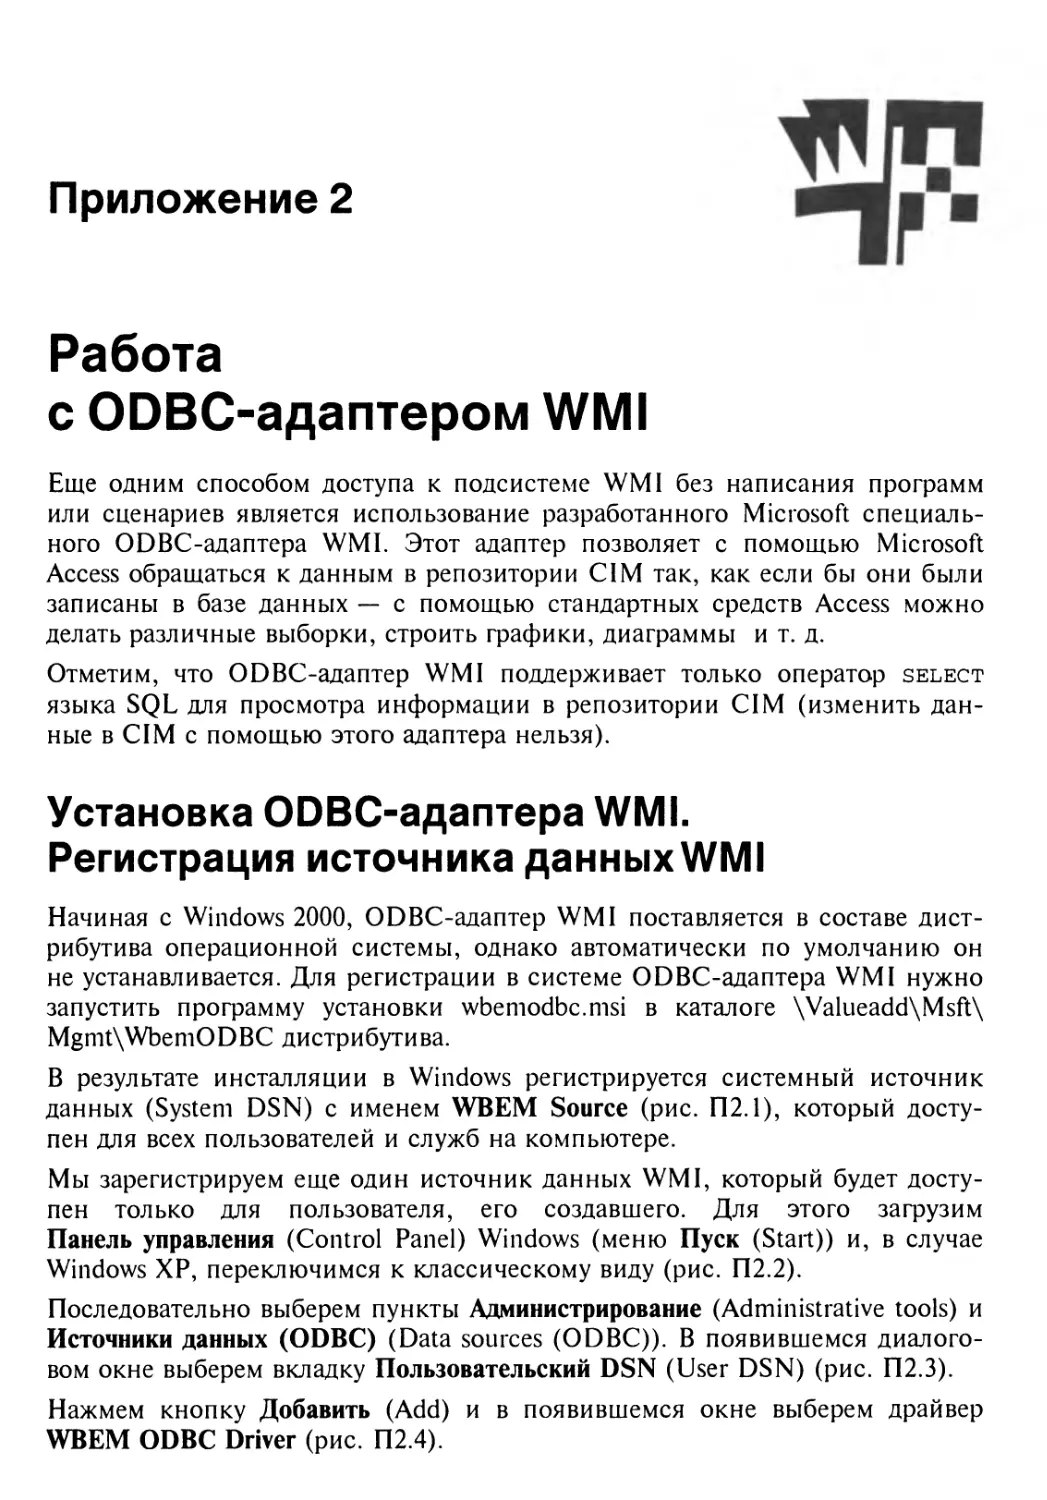 Приложение 2. Работа с ODBC-адаптером WMI